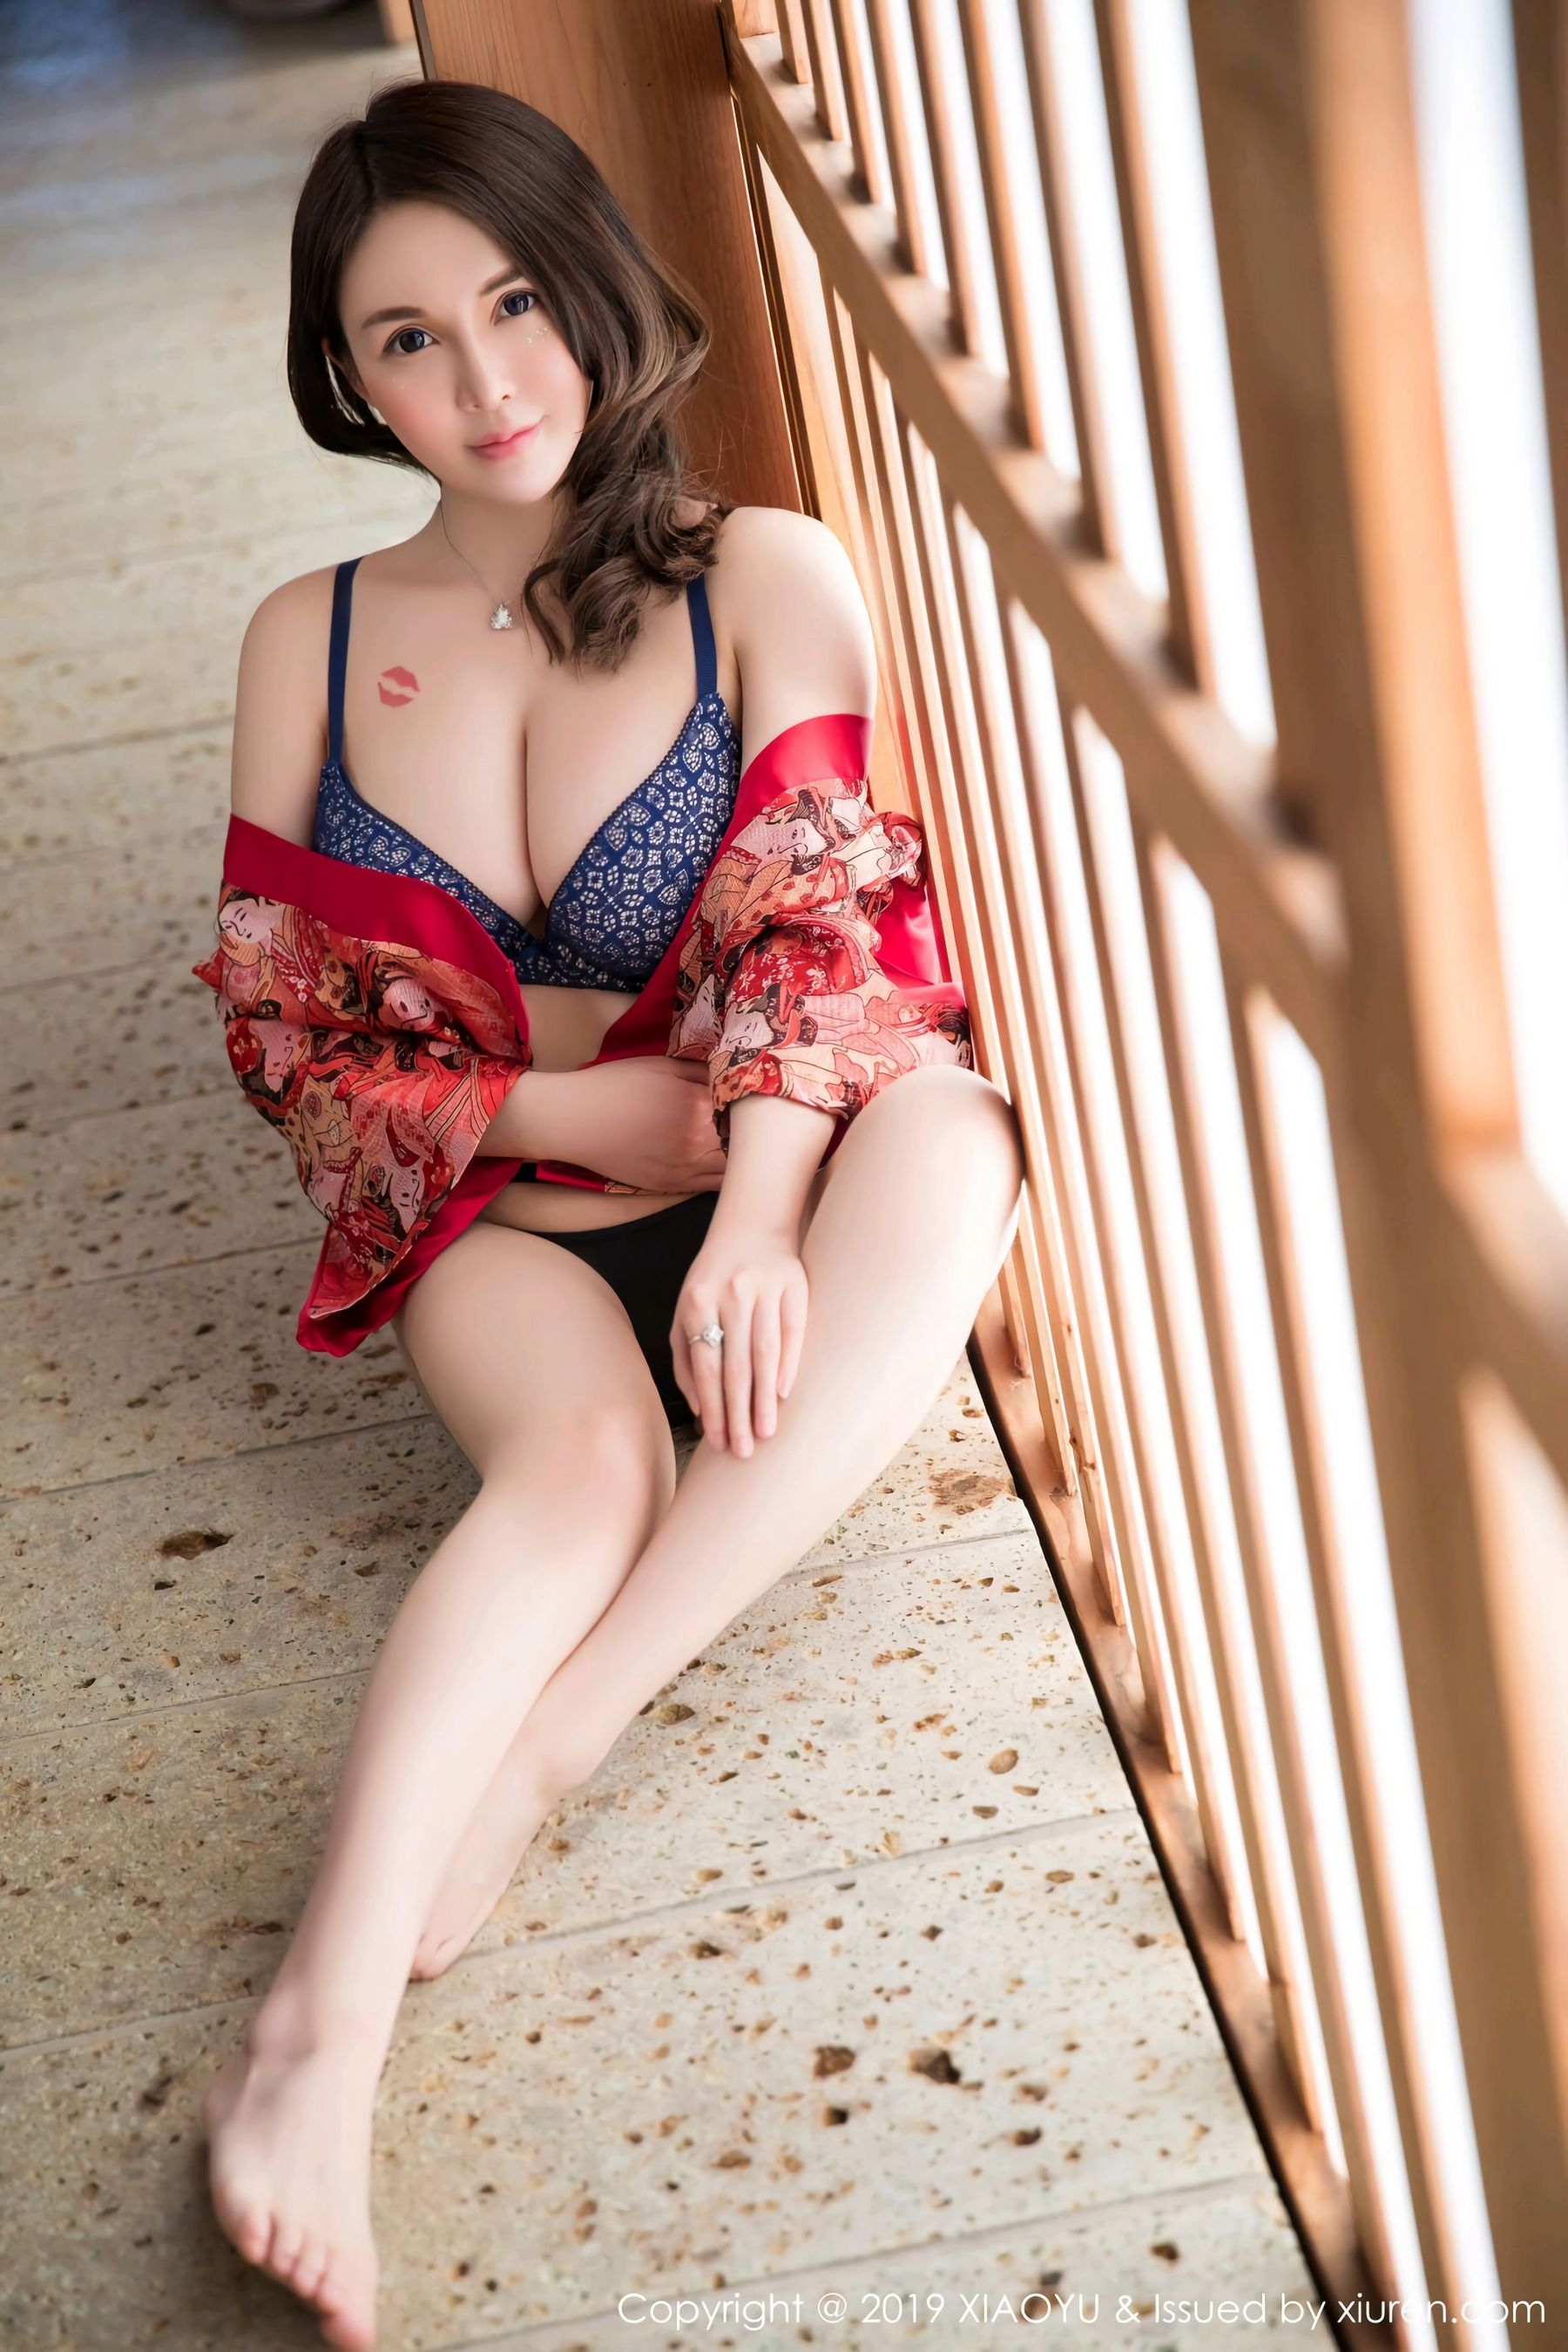 Shen Mitao "A variedade e o charme sexy da lingerie, da garota da cozi...